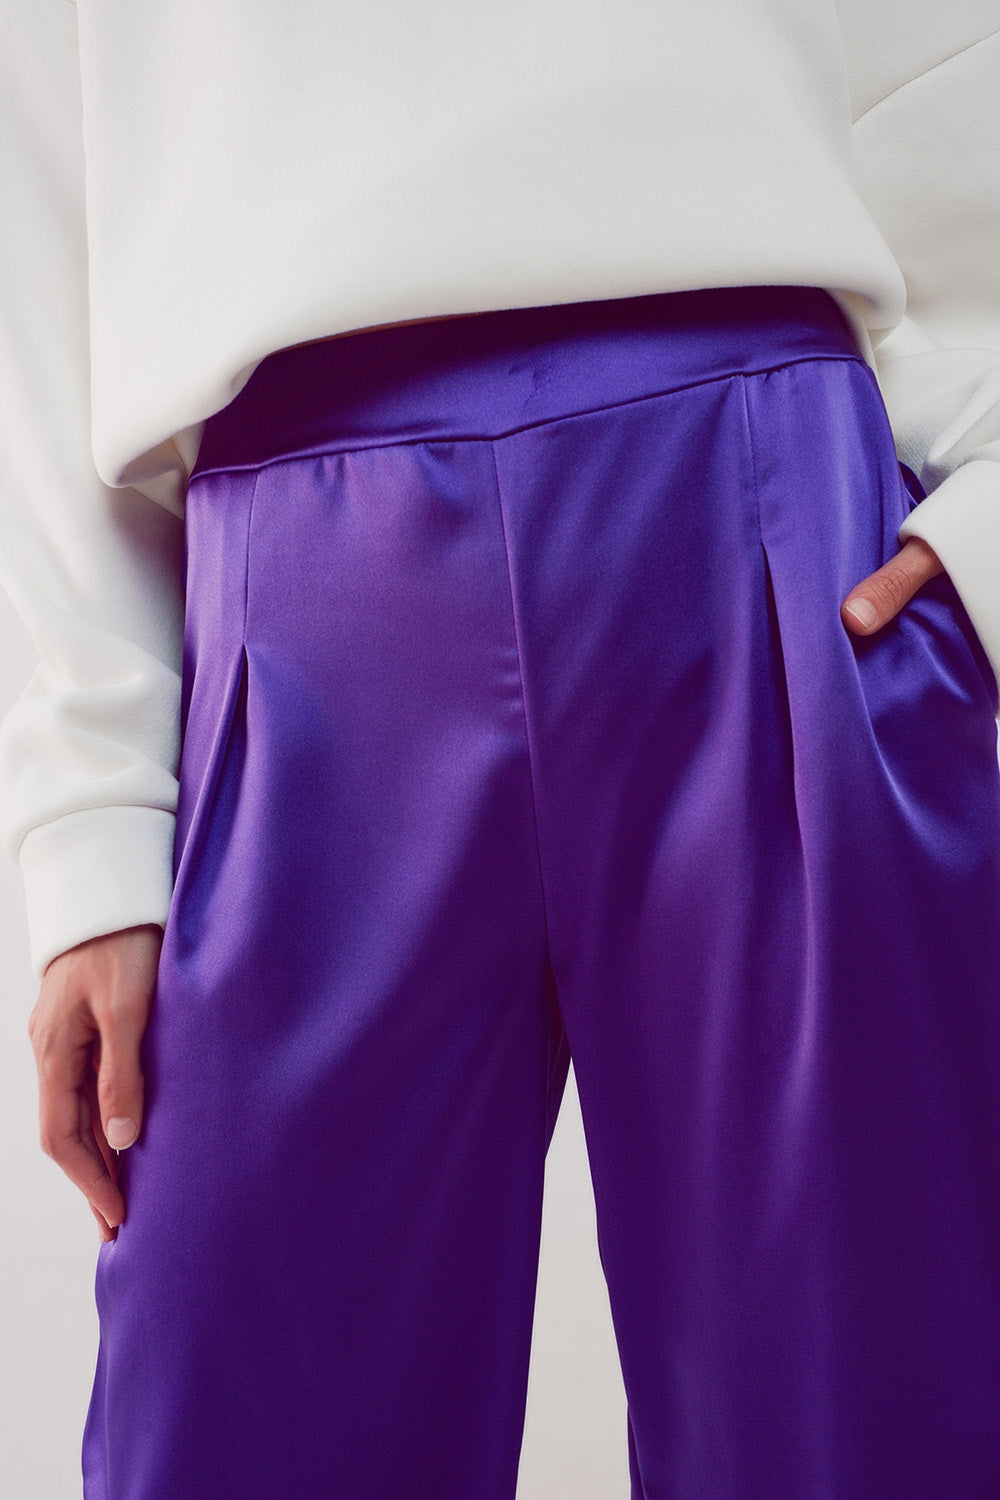 Purple Wide Leg Pants Women's Summer Irregular High Waist Suit Pants  Sagging Loose Relaxed Pants - AliExpress